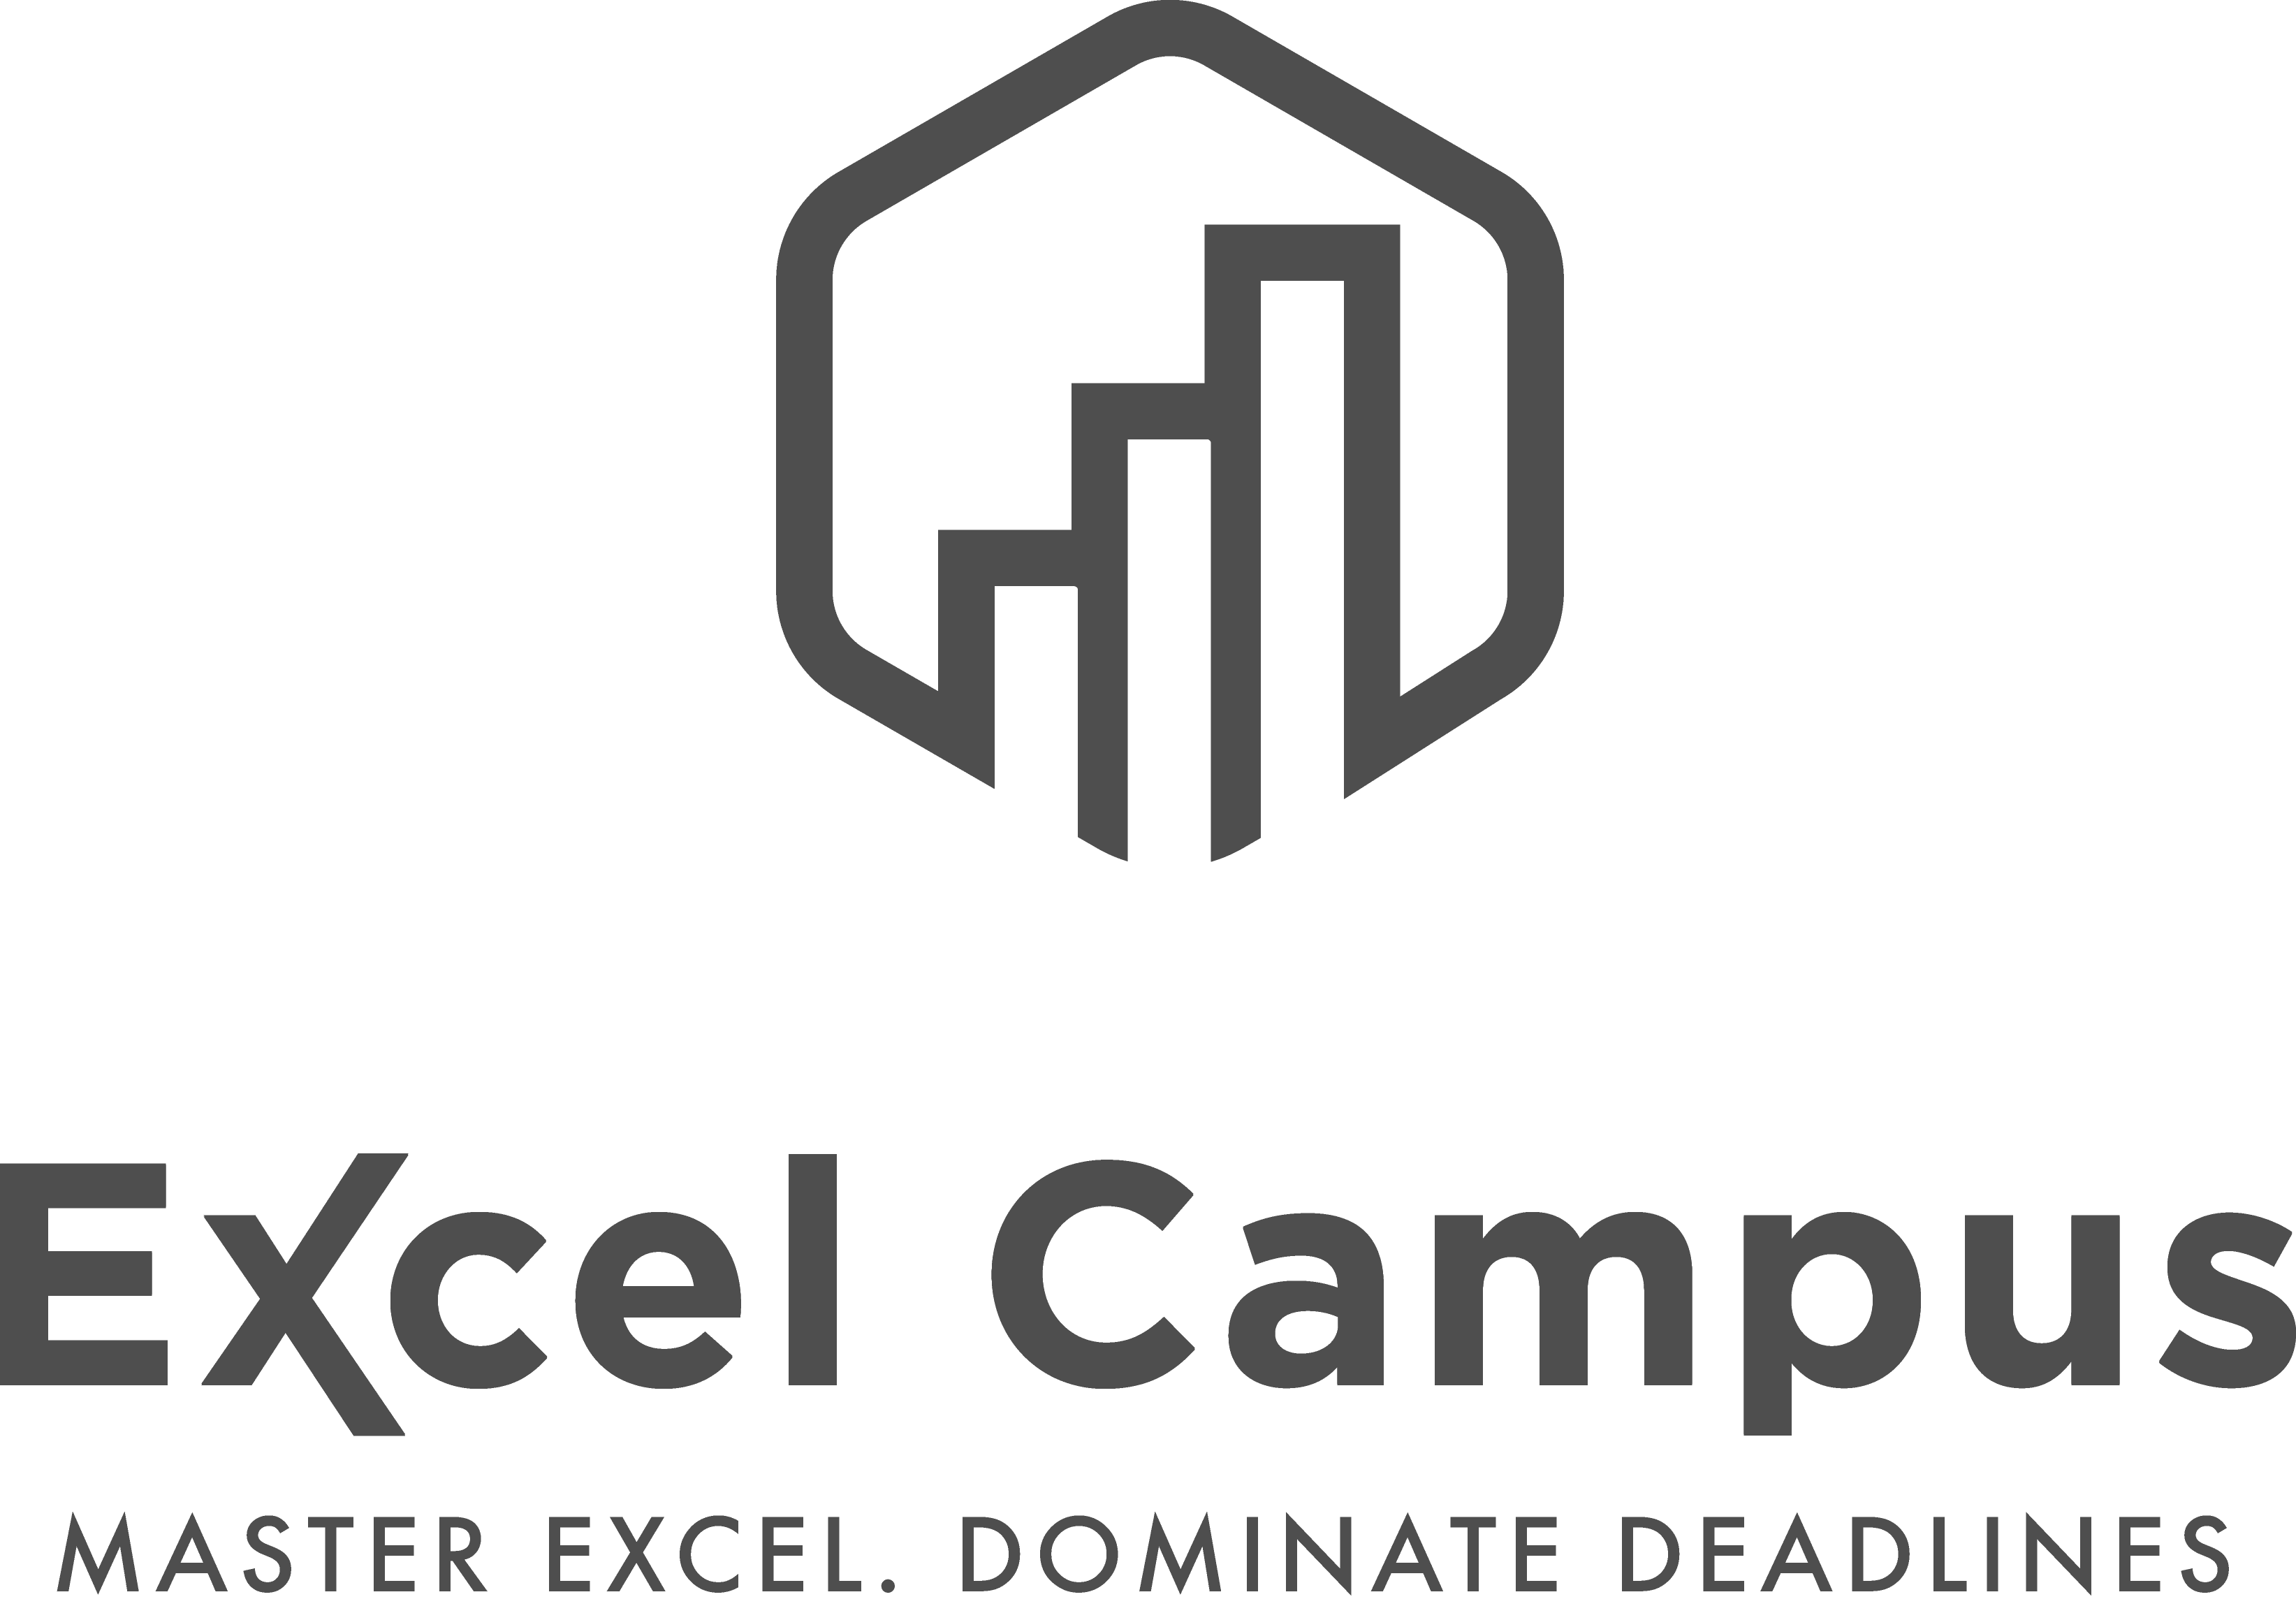 Free Excel Training Webinars & Videos Excel Campus